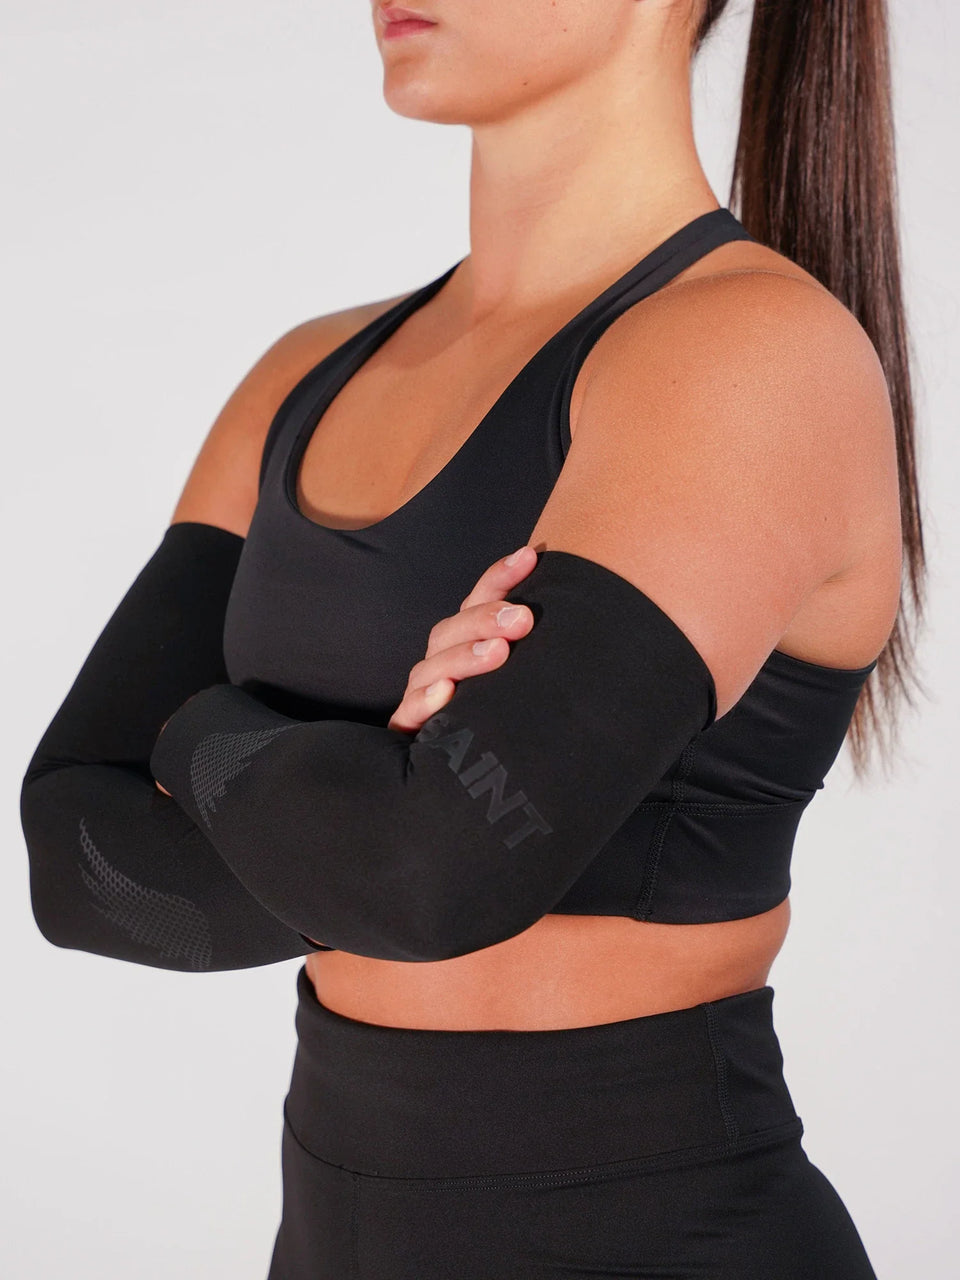 Woman wearing compression sportswear